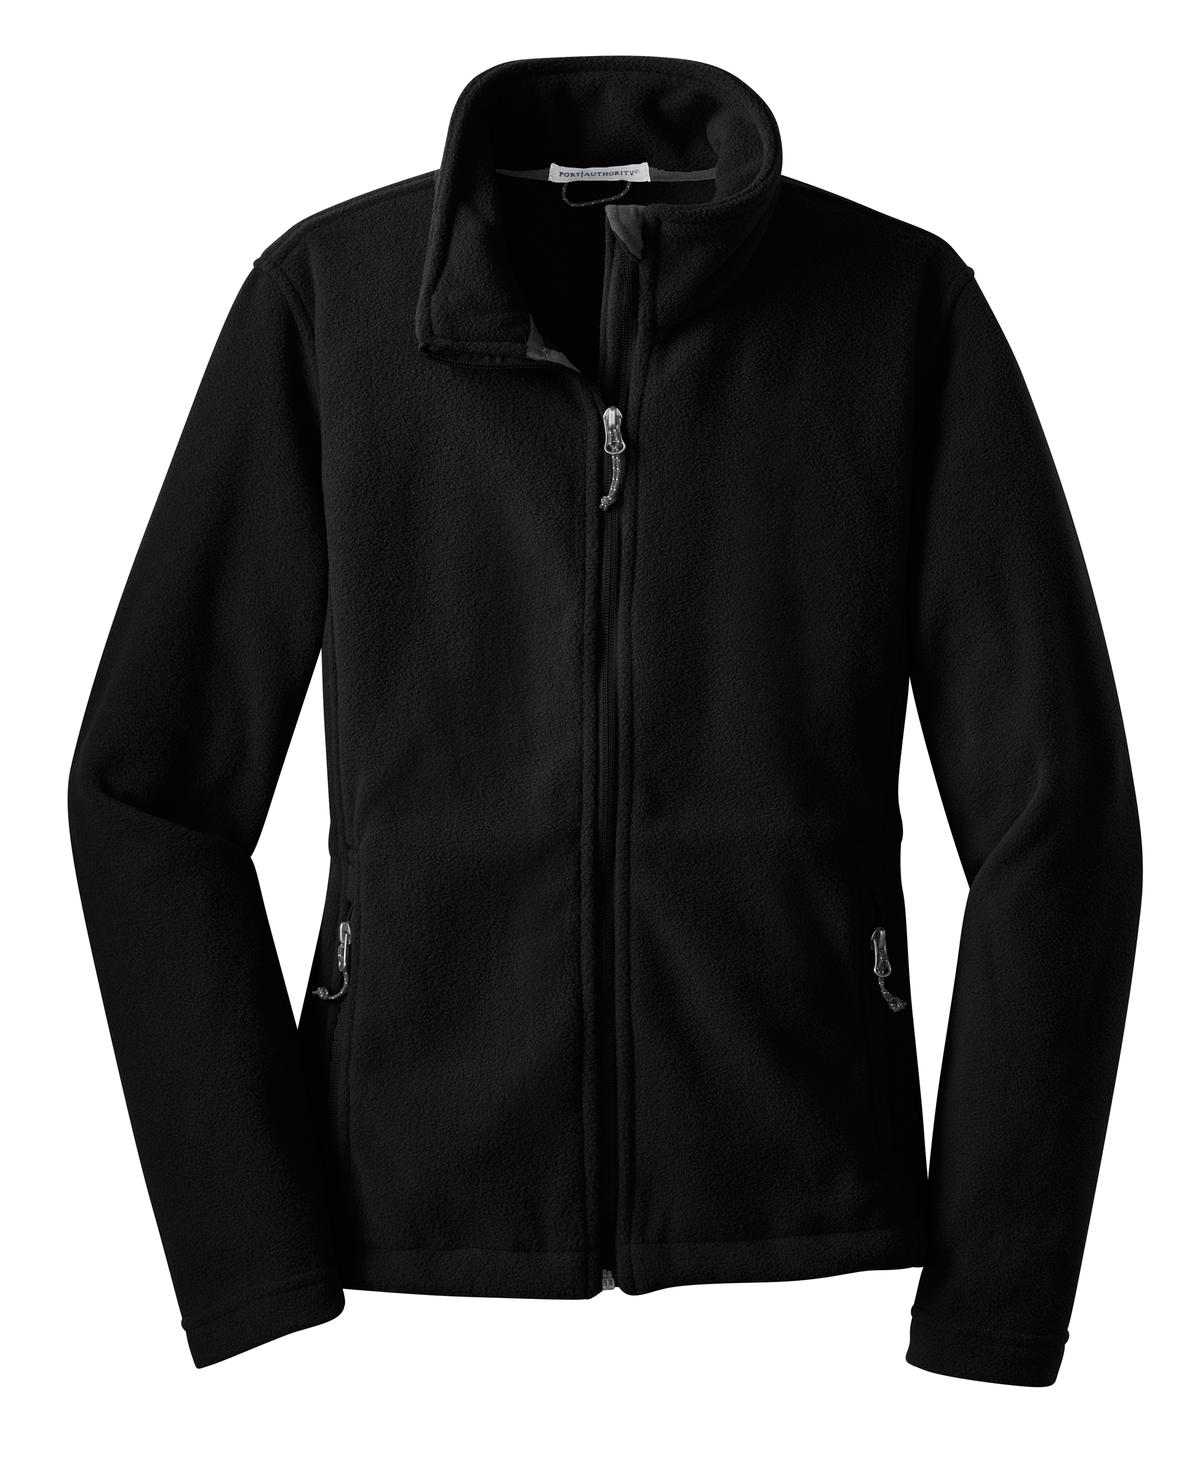 Port Authority L217 Ladies Value Fleece Jacket - Black - HIT a Double - 5